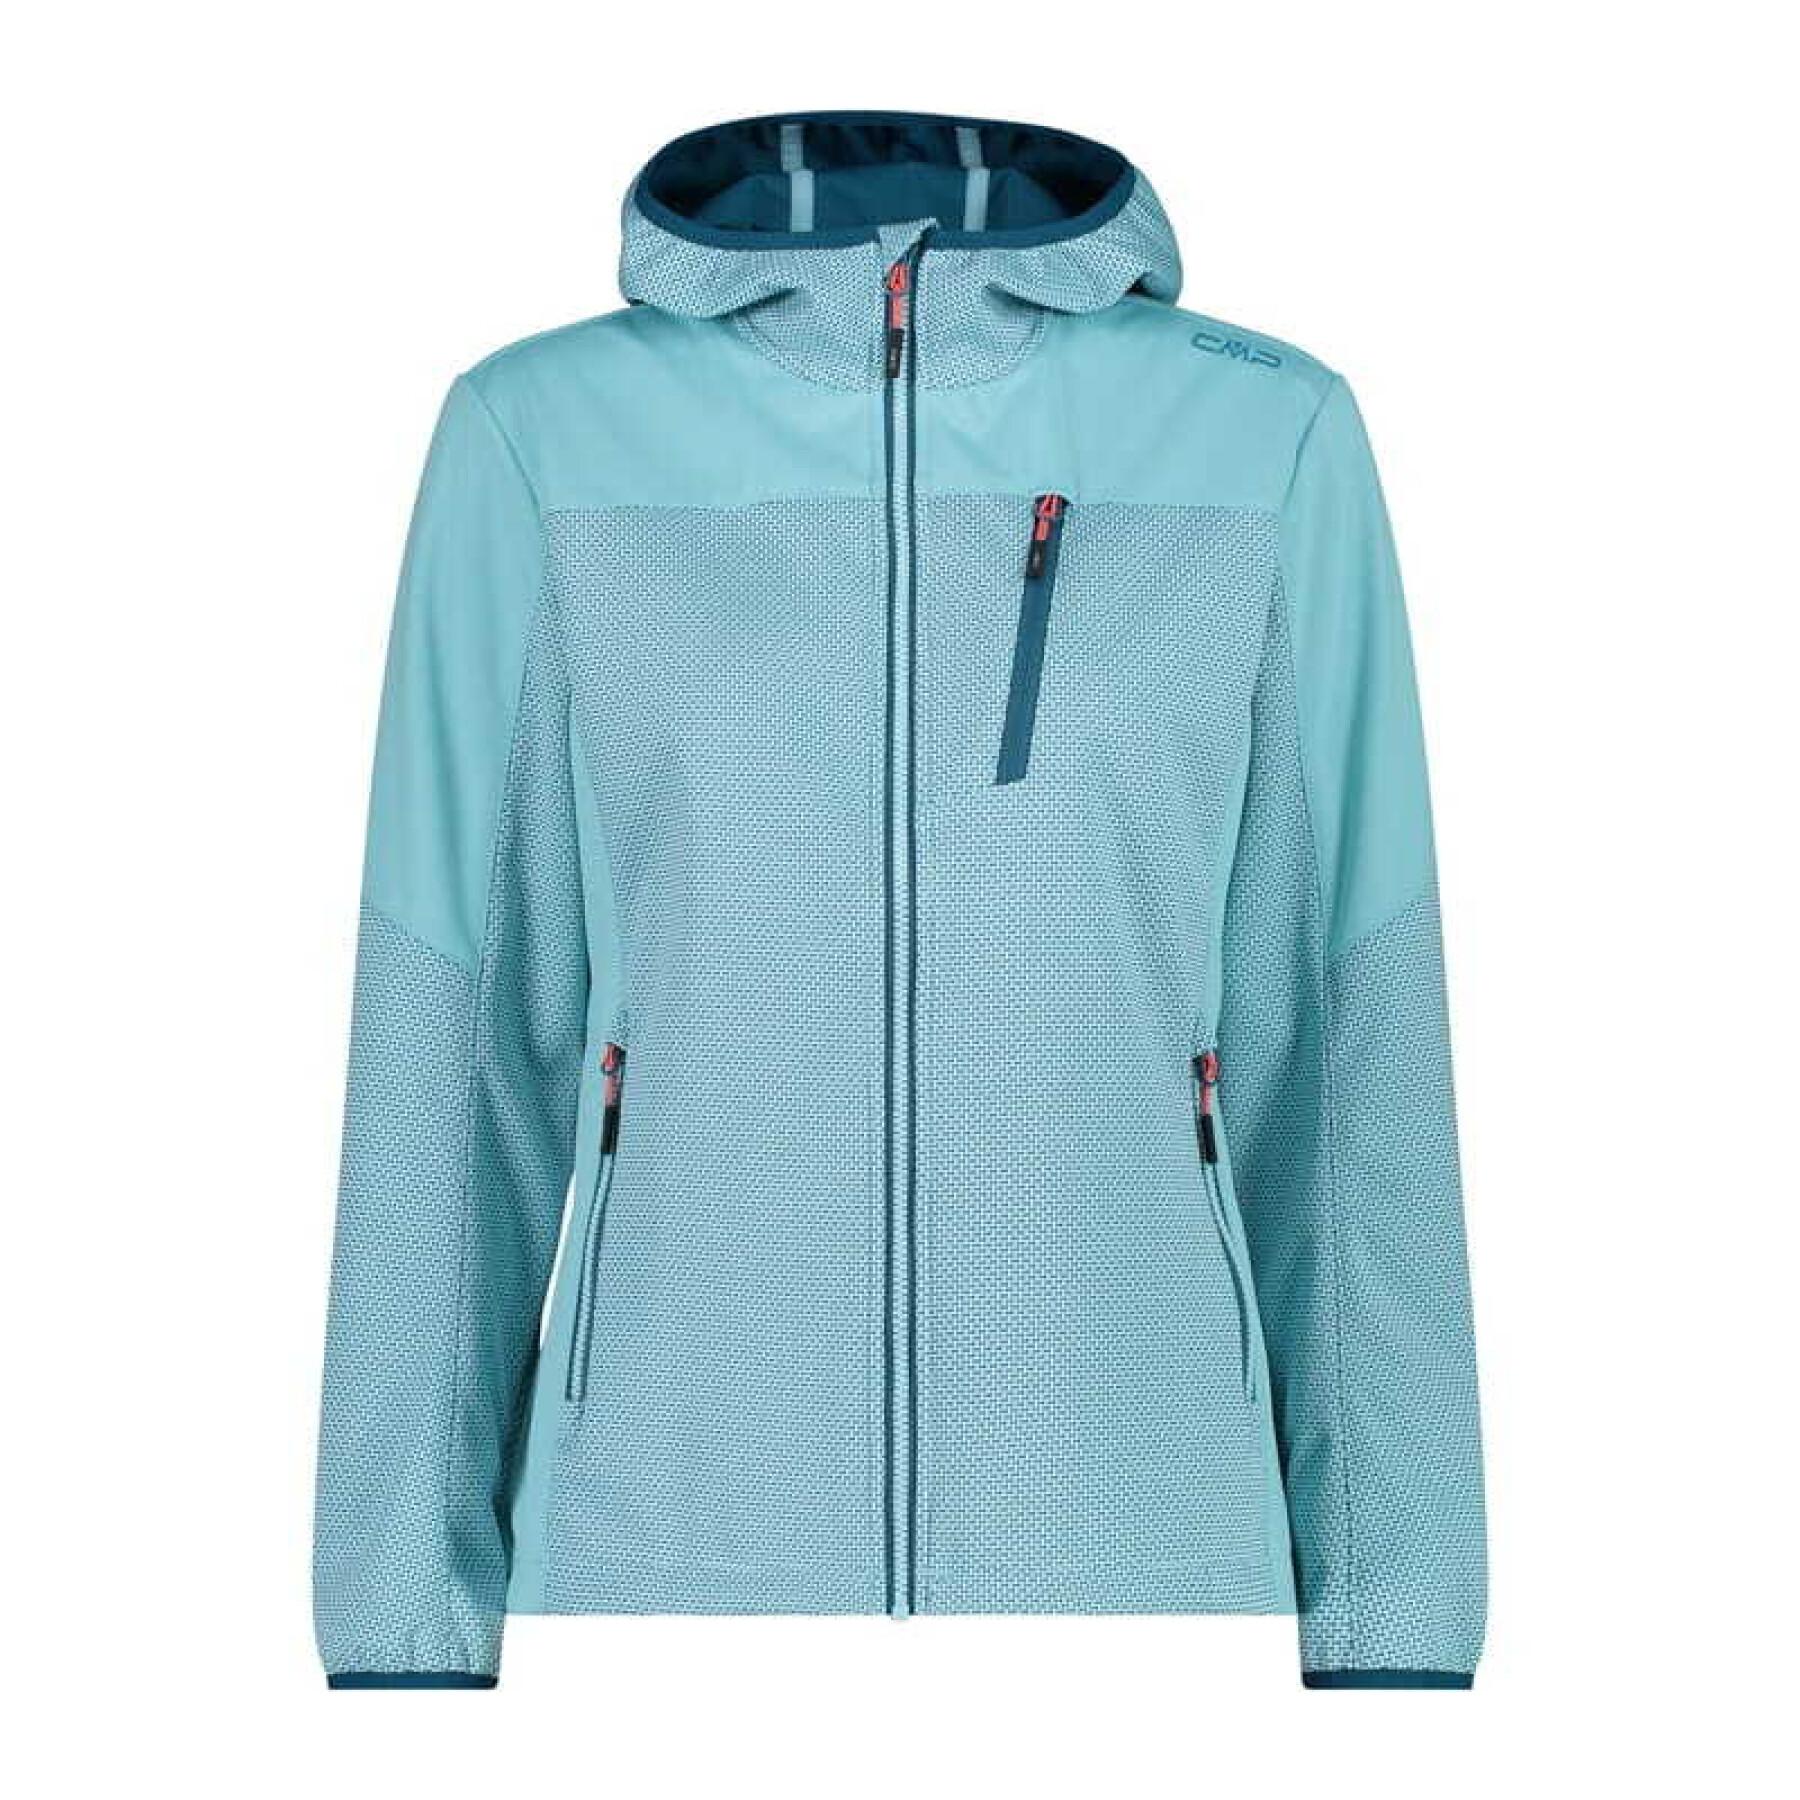 Women's hooded jacket CMP - Jackets - Clothing - Hiking